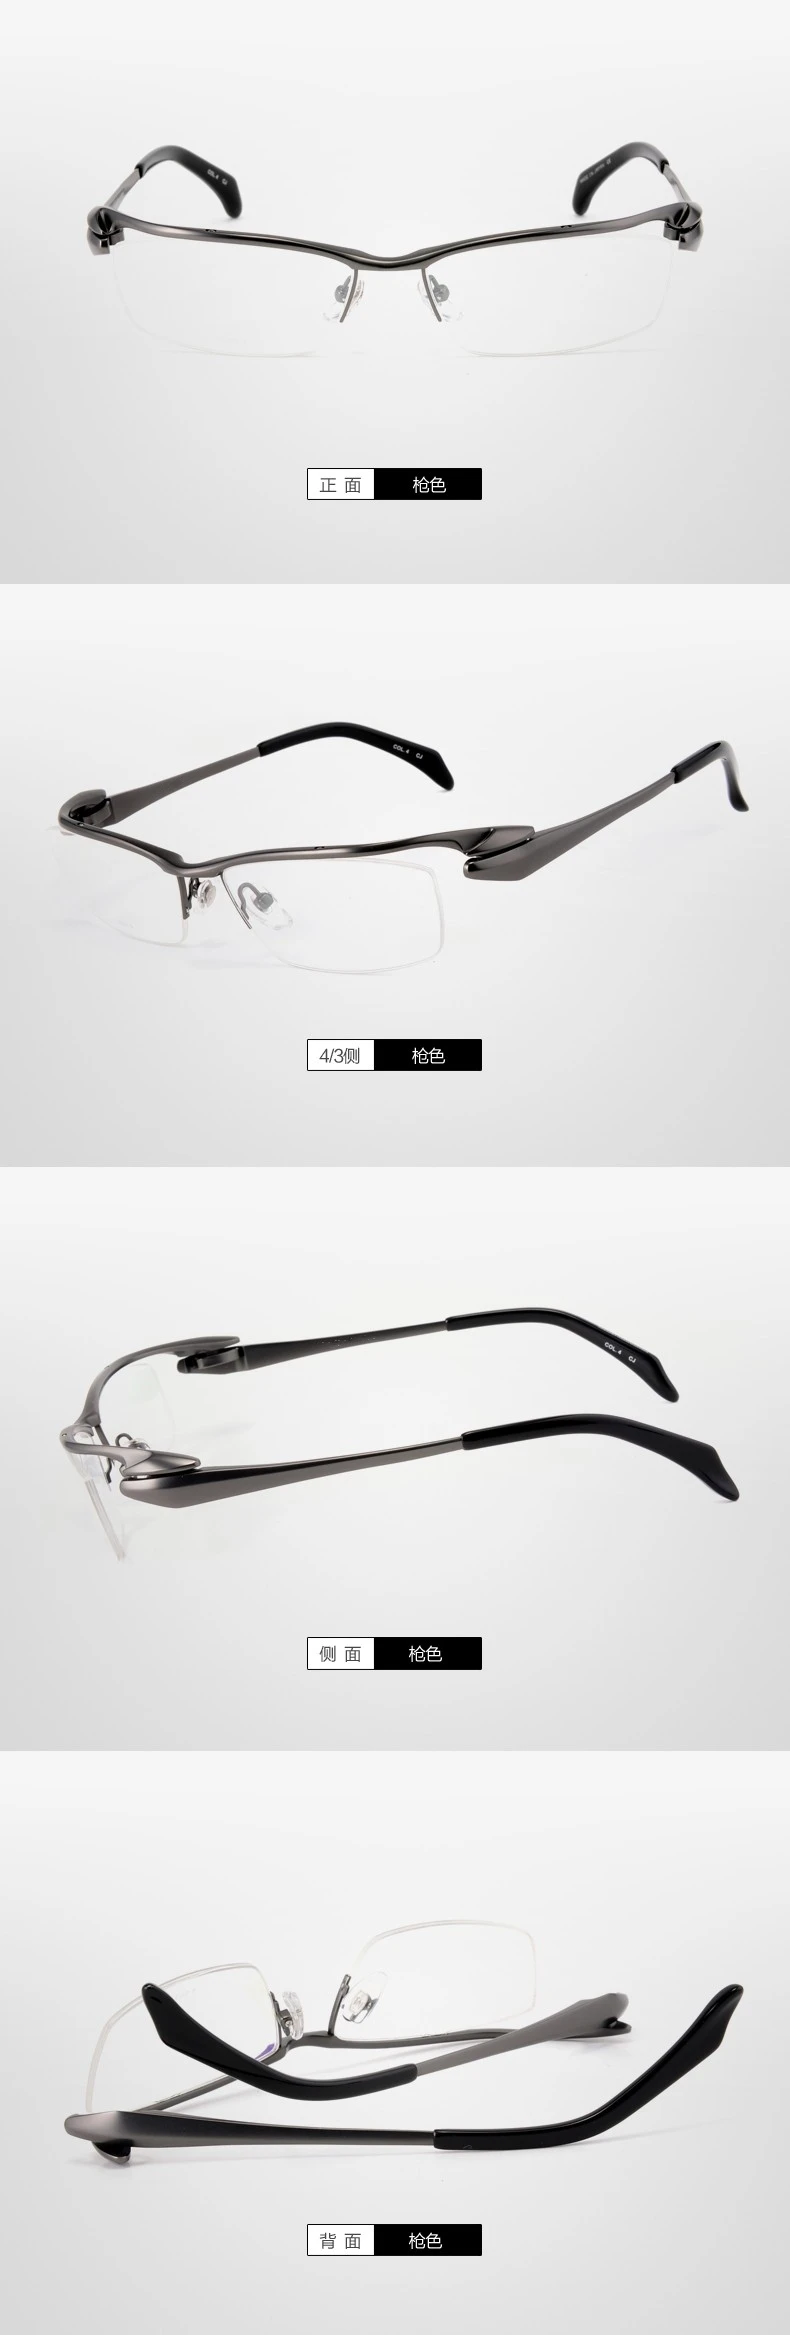 Высококлассная титановая оправа для очков мужские Оптические очки оправа для очков дизайн Streamline надбровные очки